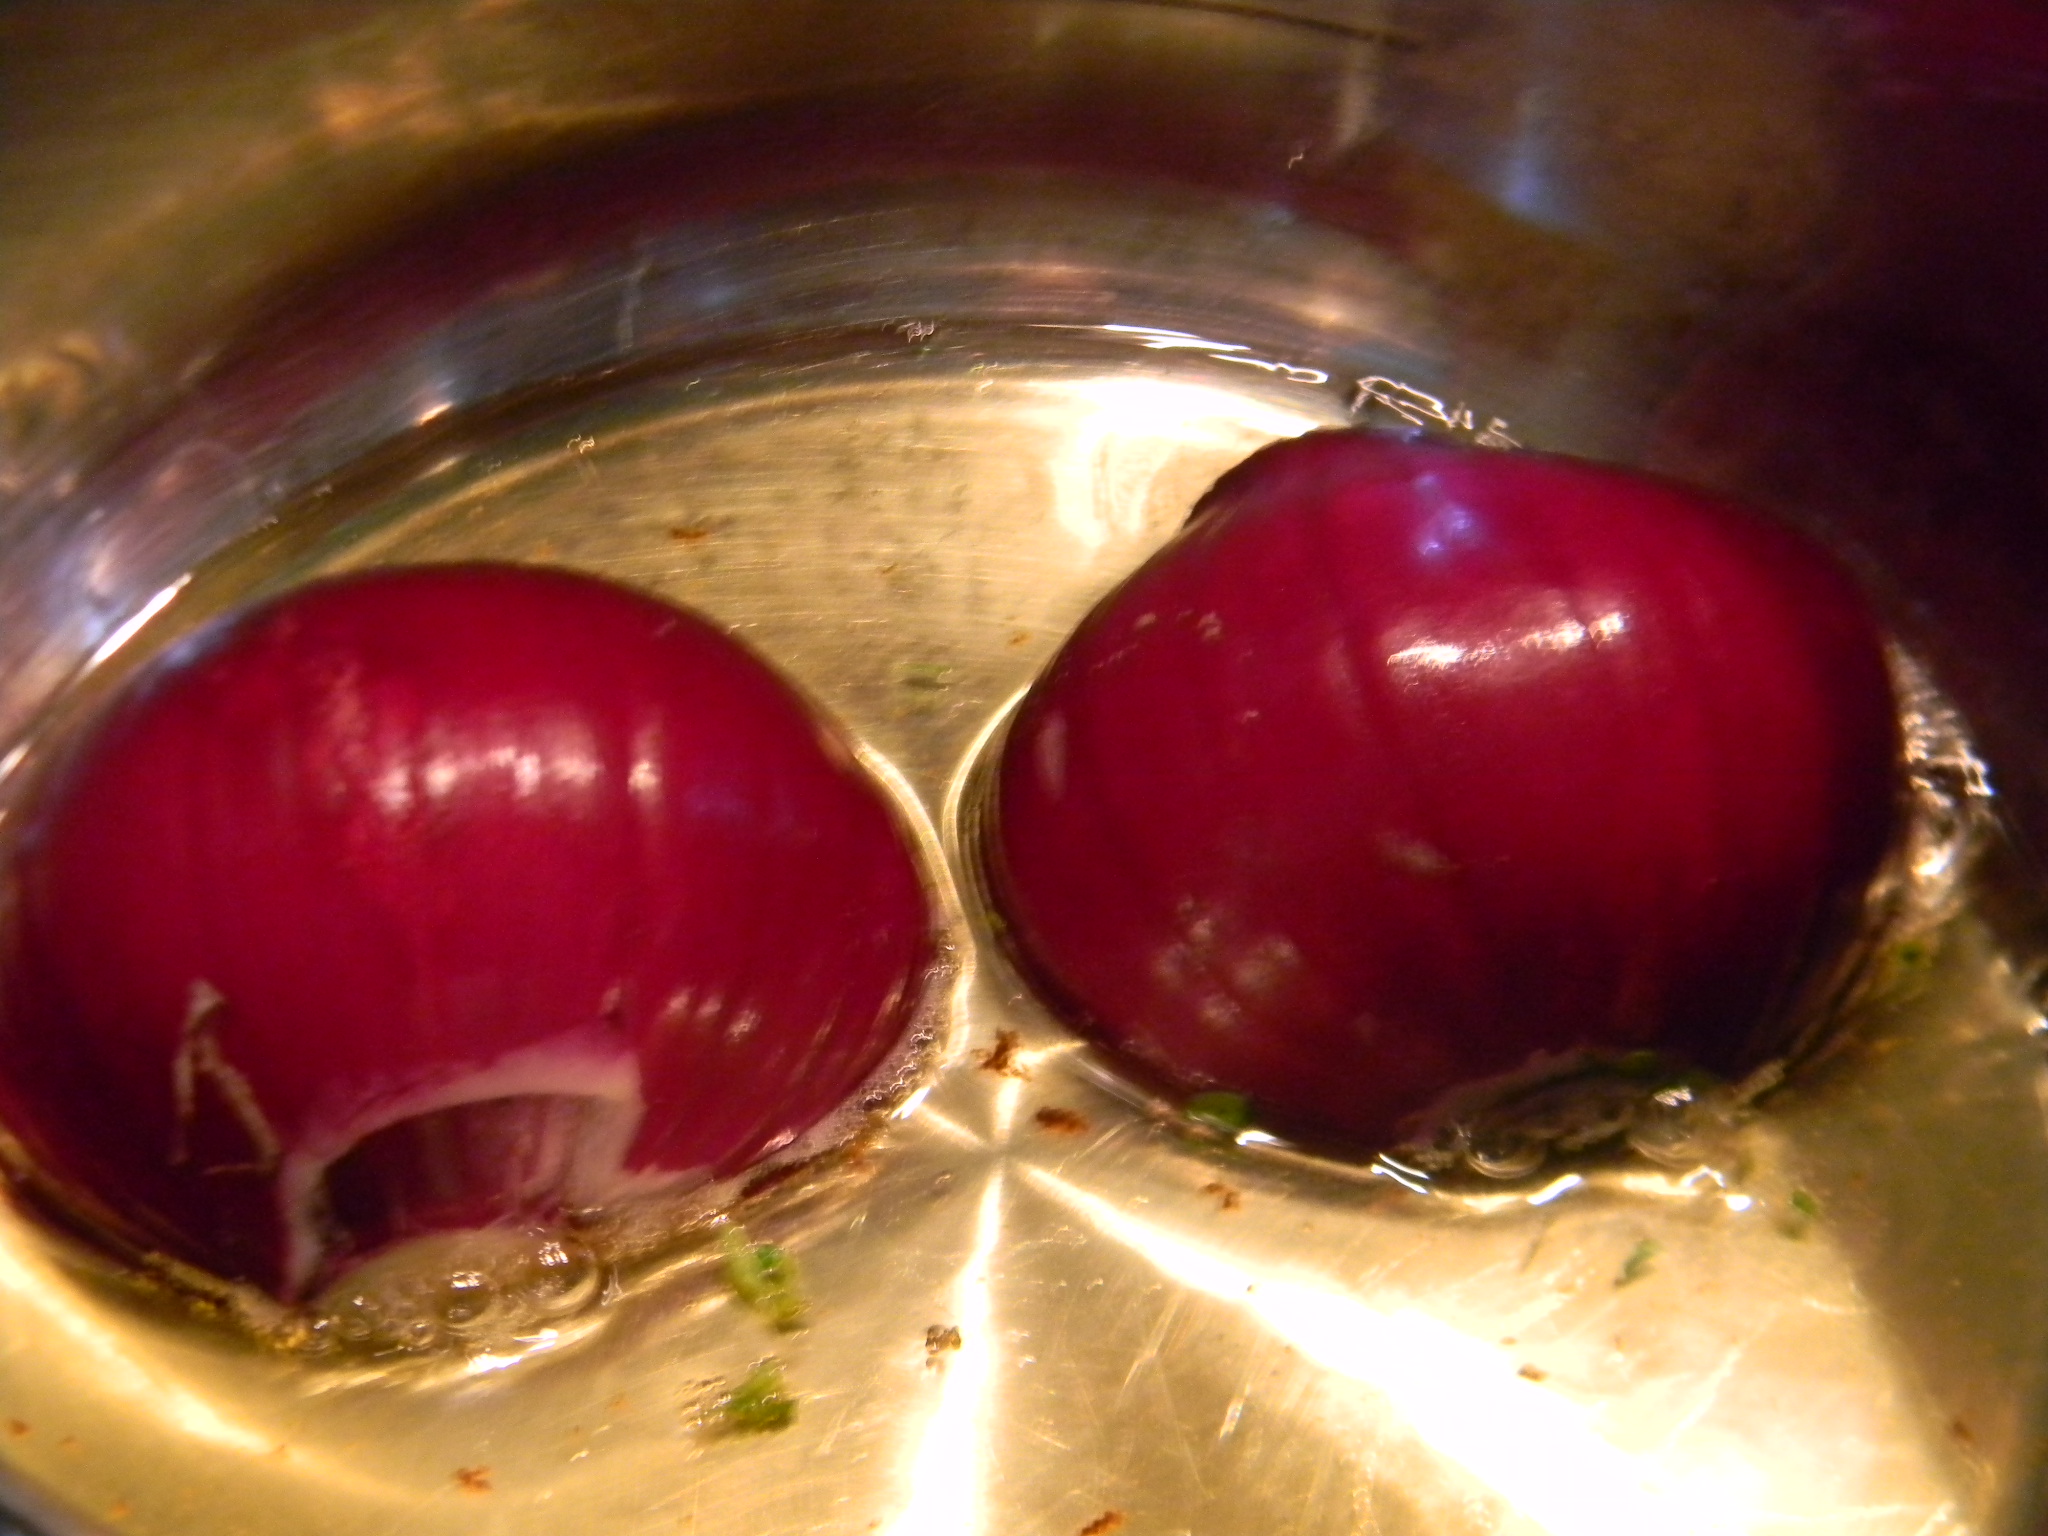 Chiftelute marinate in sos de rosii